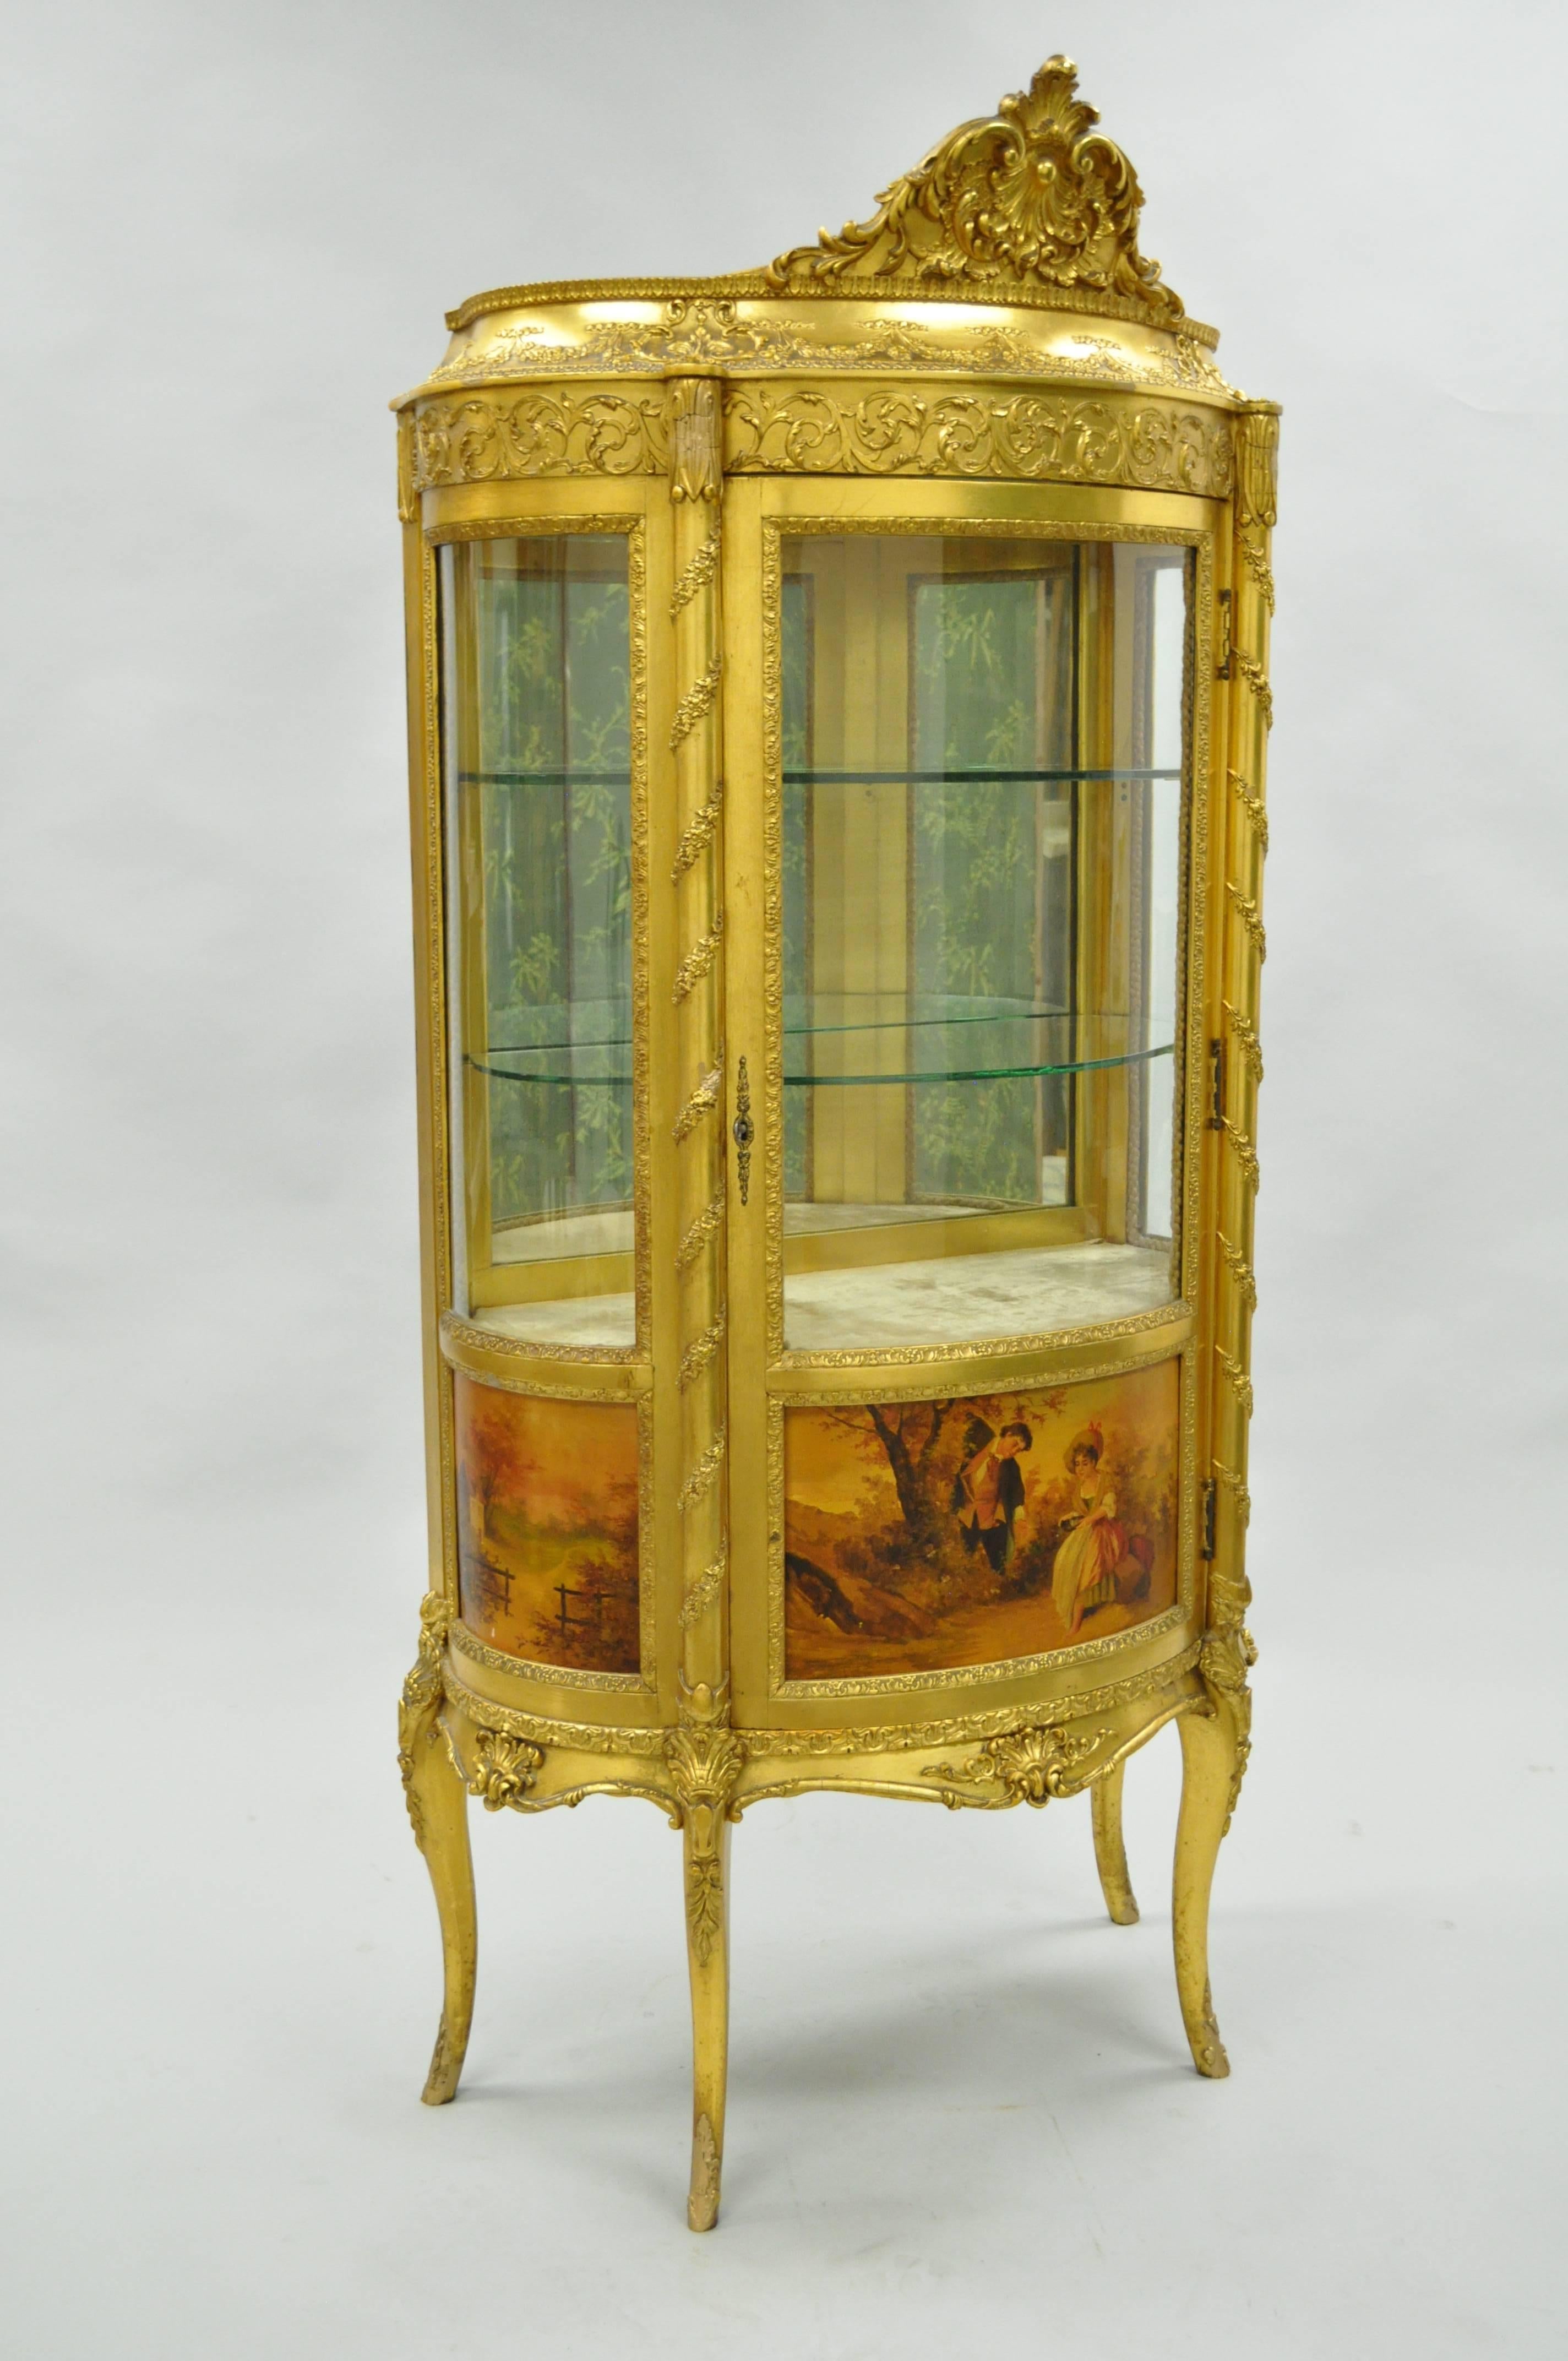 Remarquable cabinet de curiosité de la fin du 19e siècle de style Louis XV français en bois doré vernis Martin à vitres incurvées. Le cabinet français, avec un plateau et une caisse en serpentin, sculpté de rubans noués, d'enveloppes et de vignes